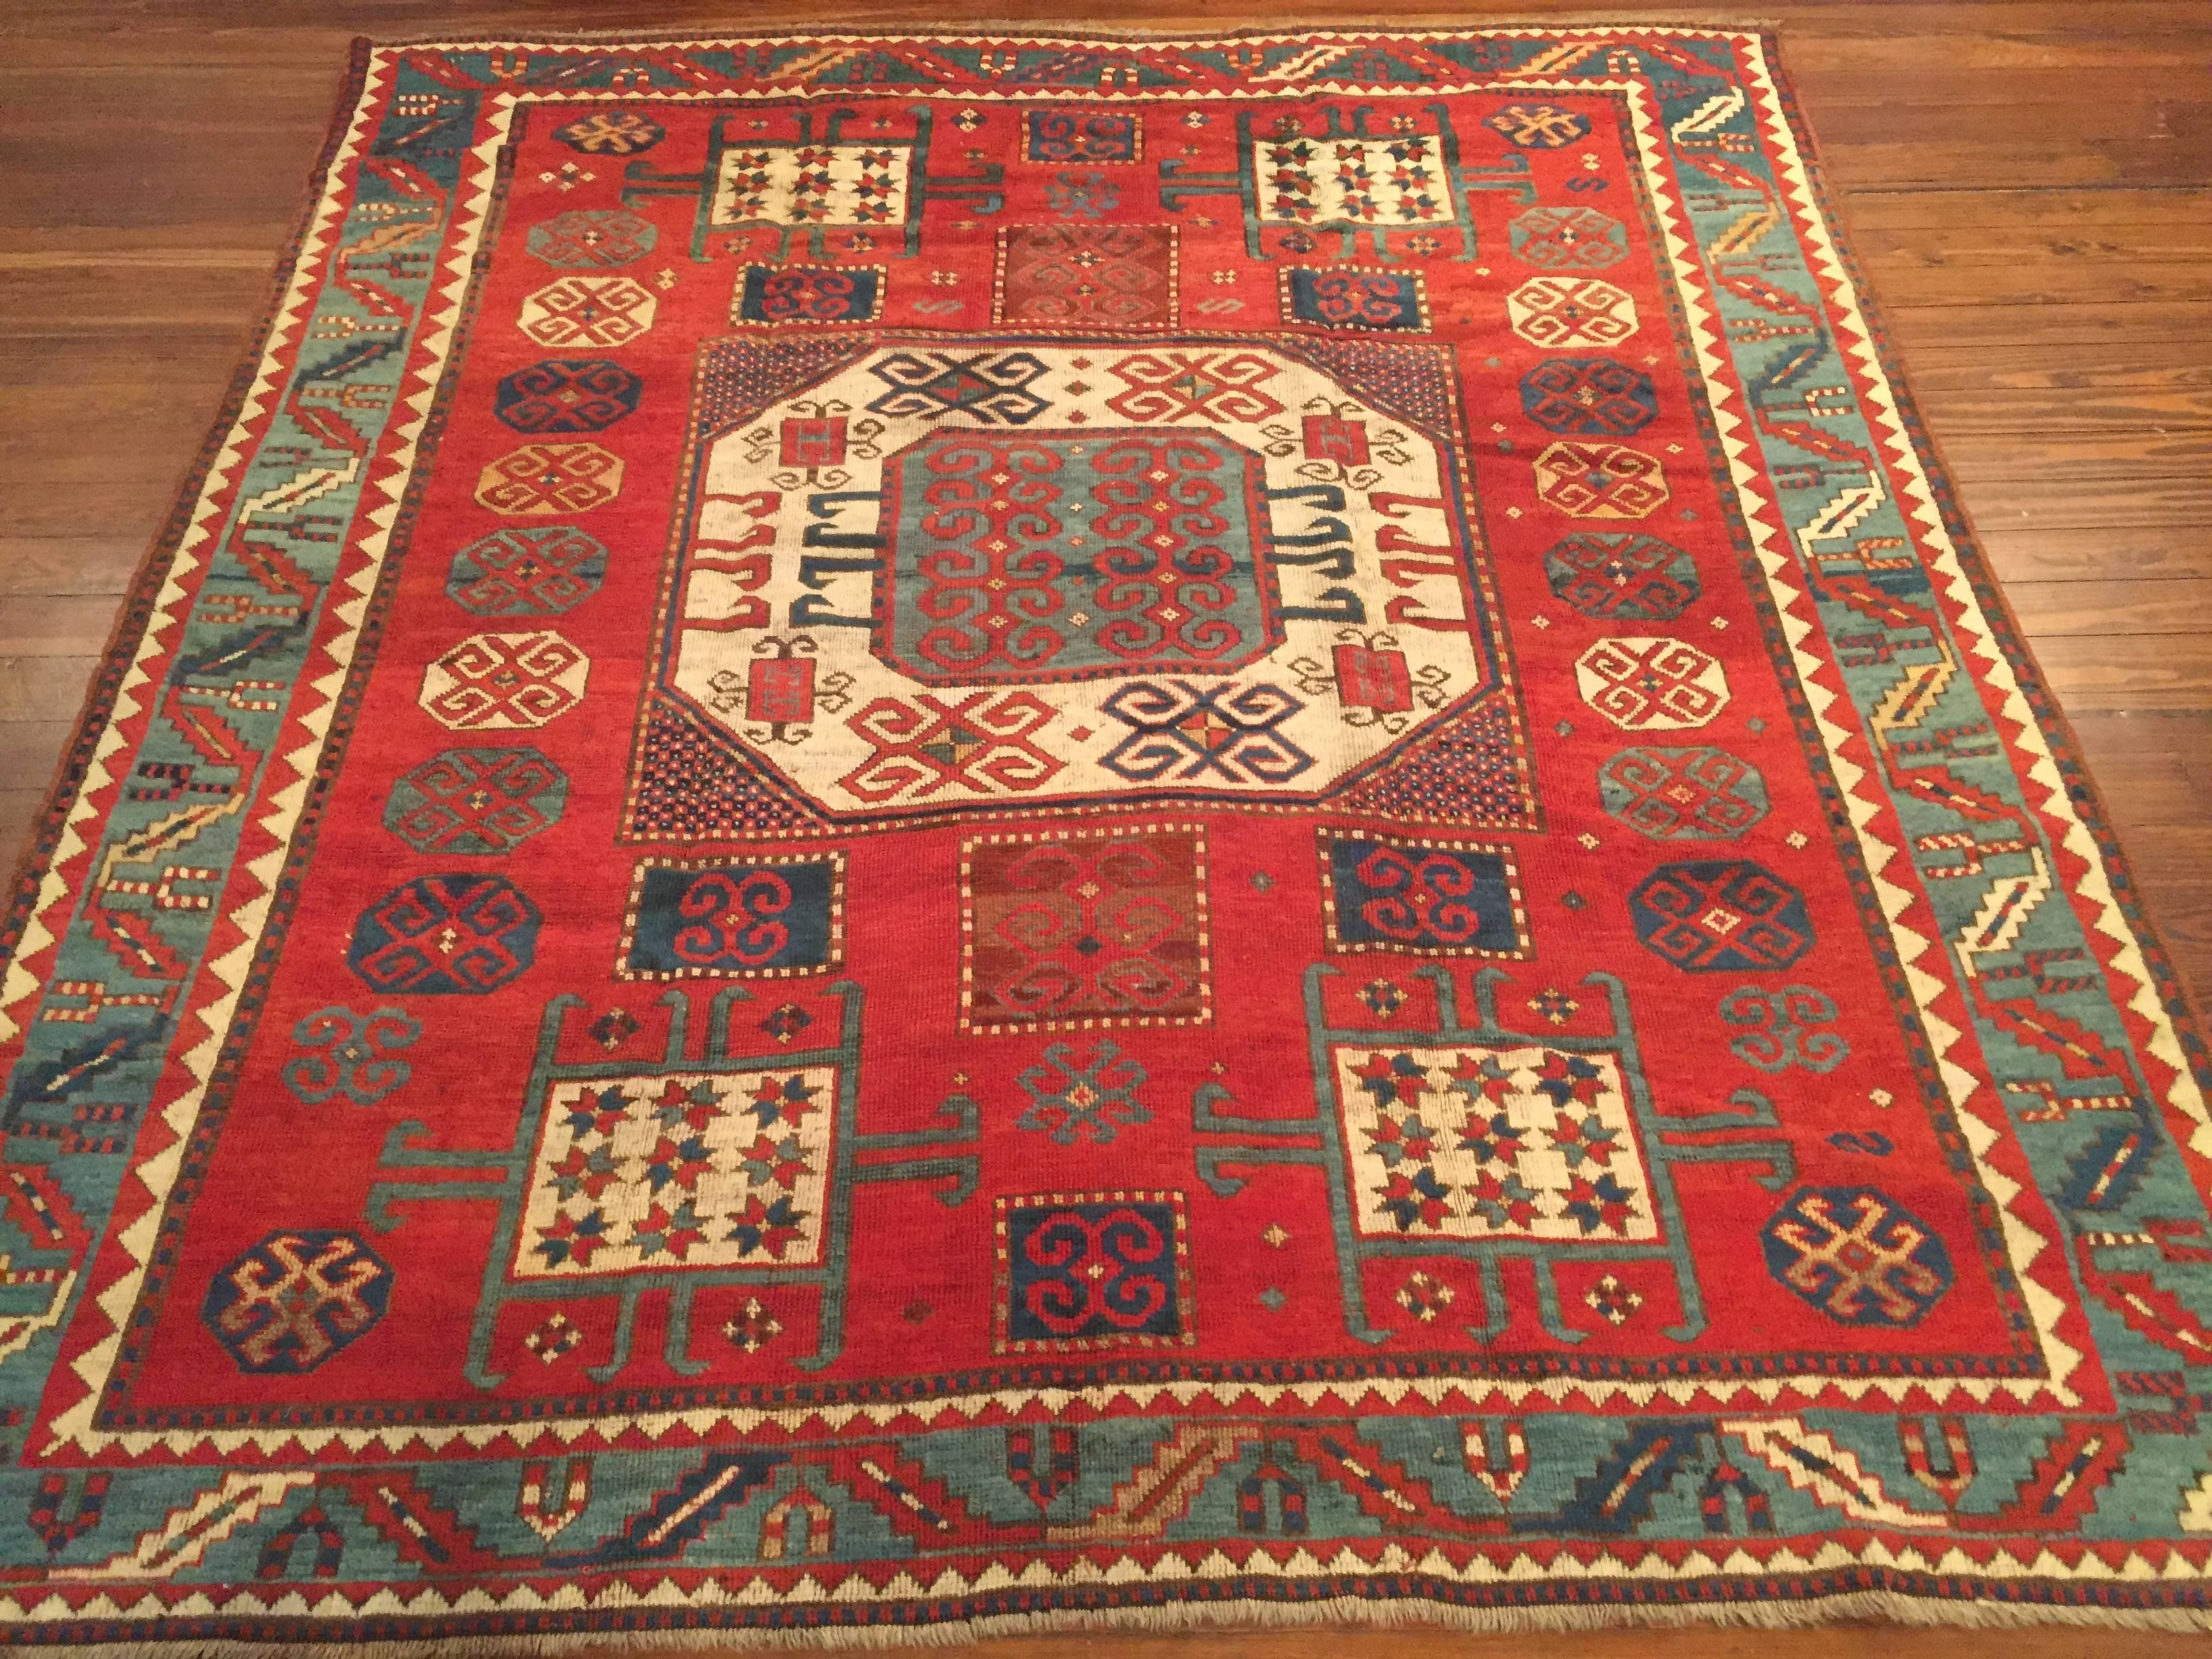 An antique Caucasian Karachopf Kazak rug, circa 1880.